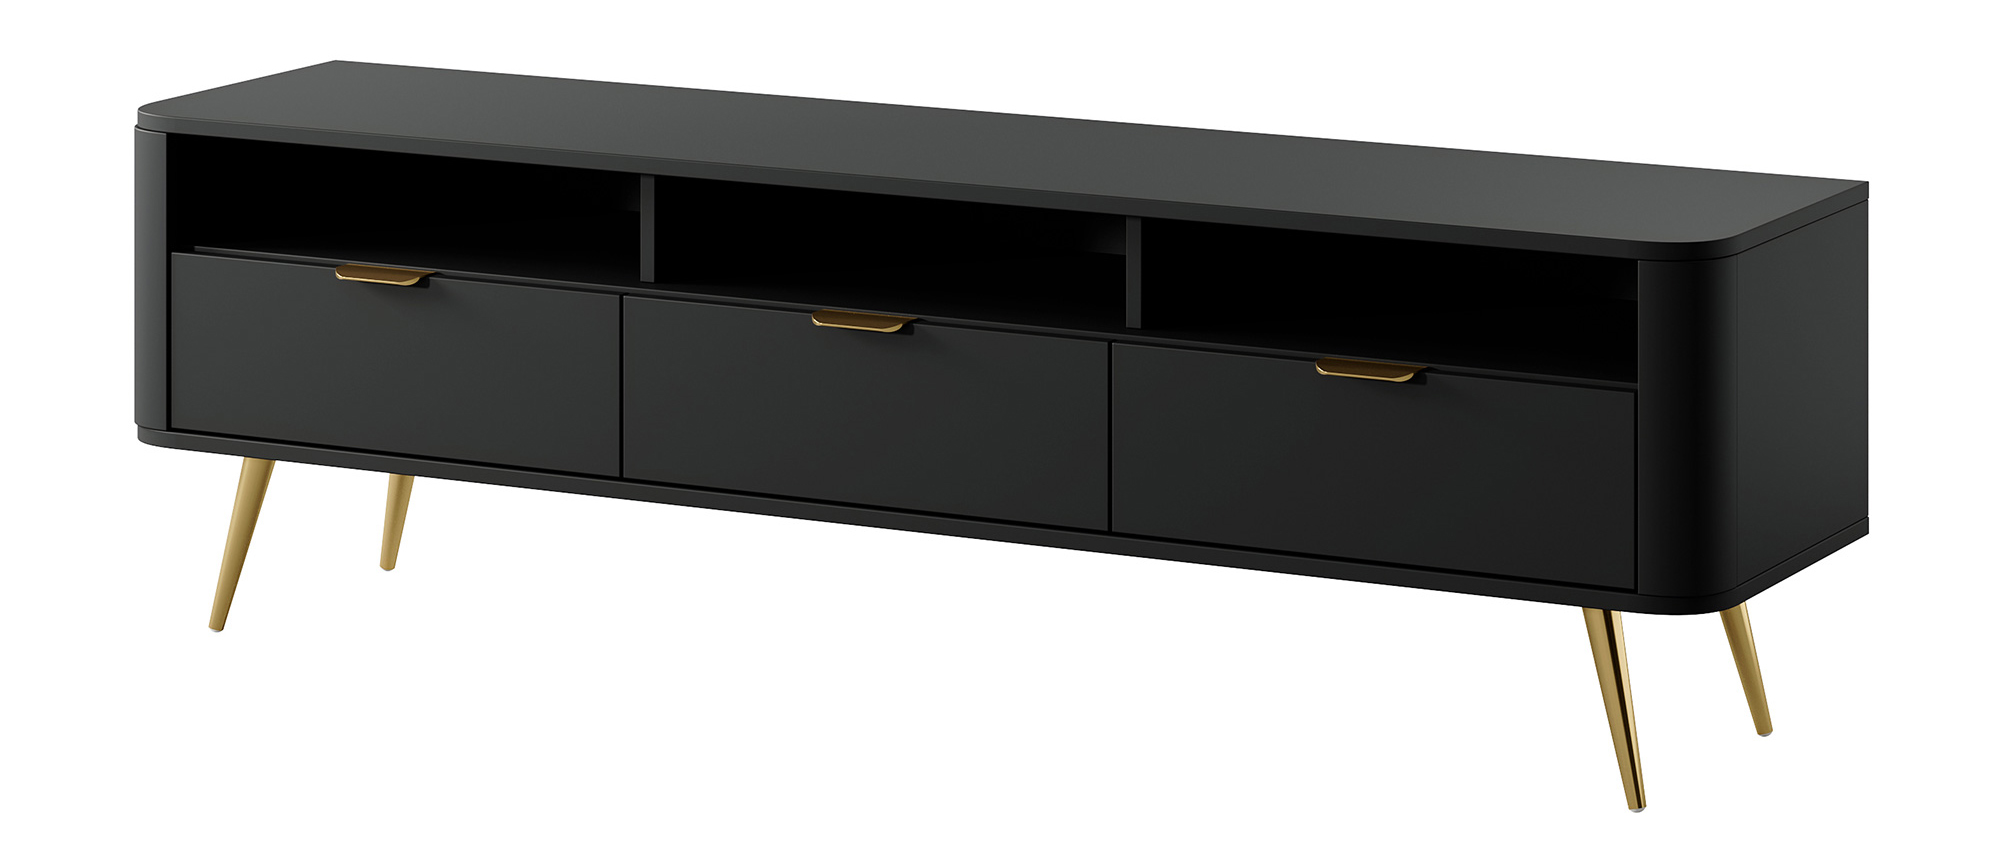 TV-Lowboard OVAL schwarz mit offenen Fächern, 160 cm 